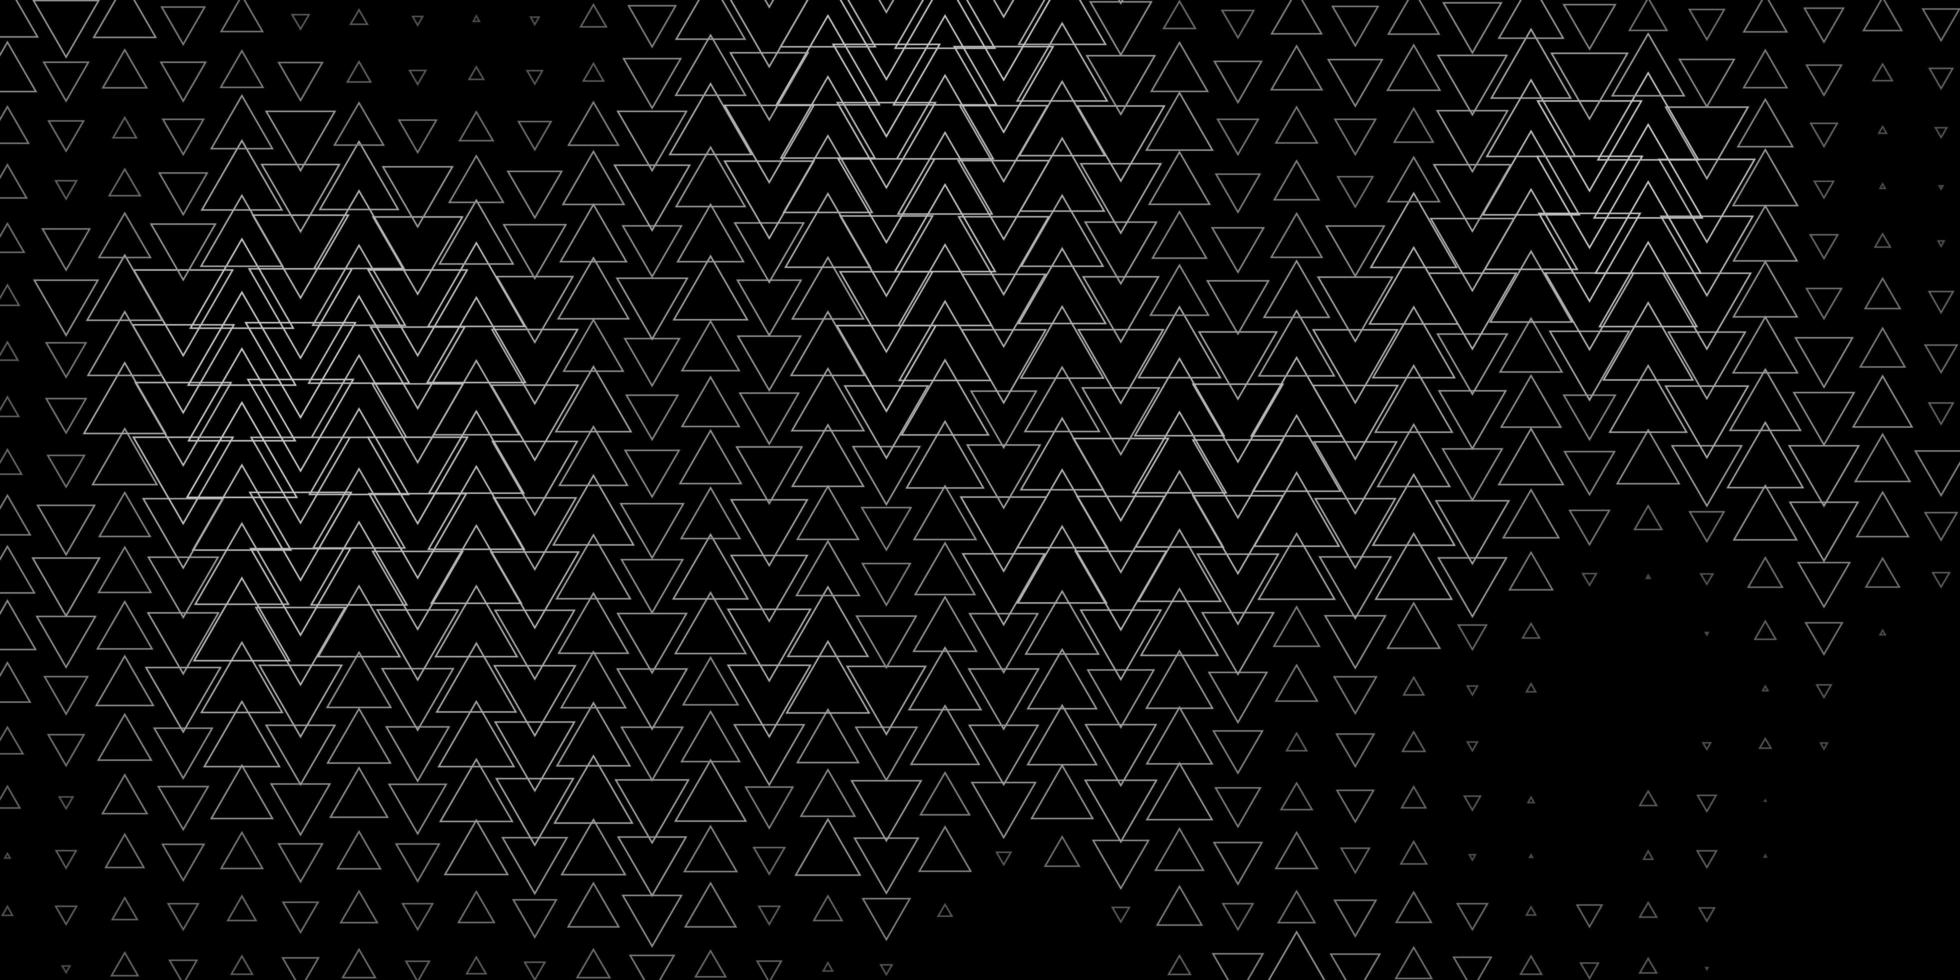 padrão de vetor cinza escuro com linhas, triângulos.